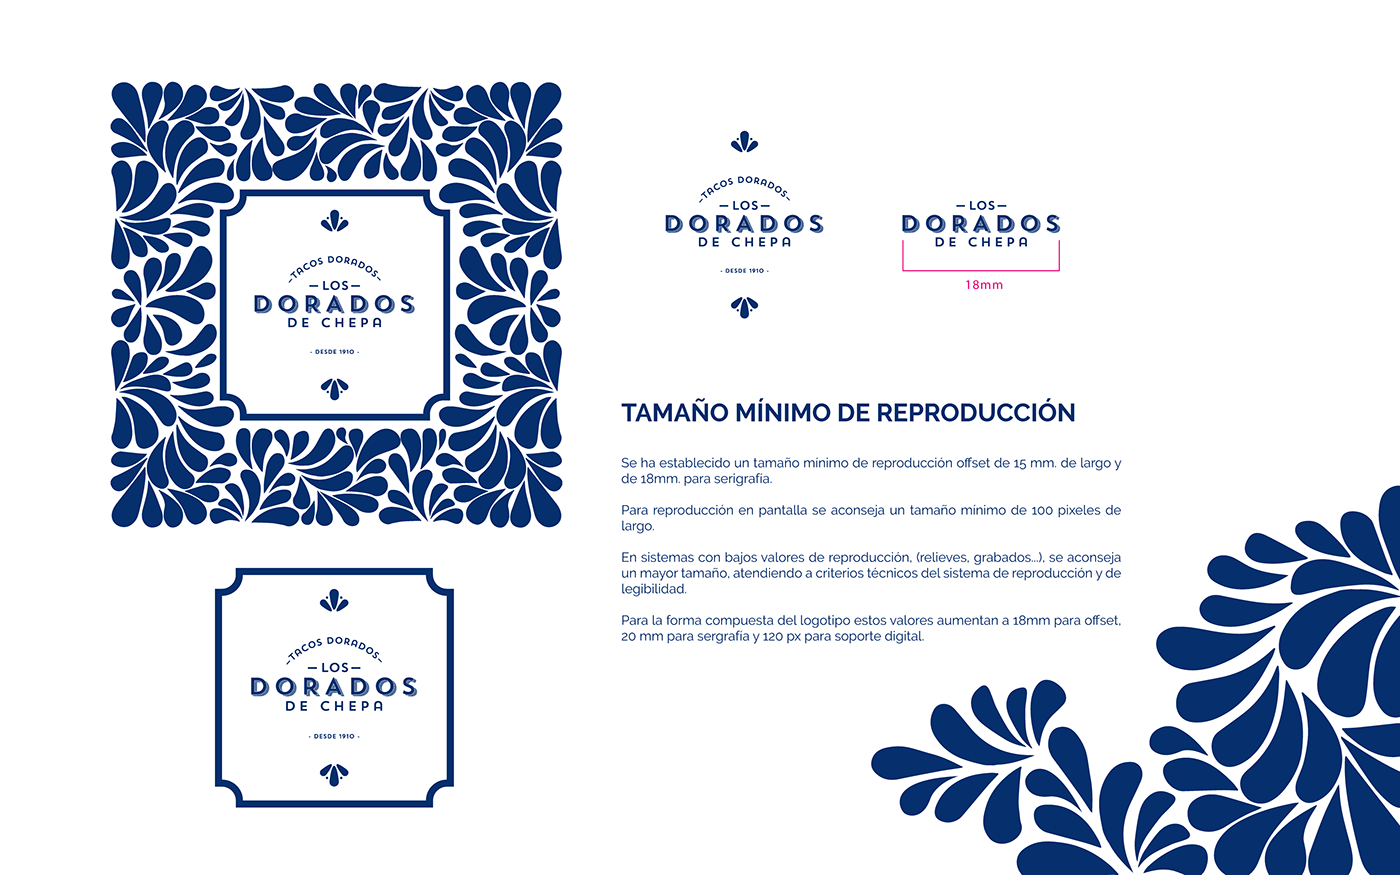 branding  Identidad Corporativa Manual de Identidad Manual de Marca Brand Identity Manual mexico empresas mexicanas